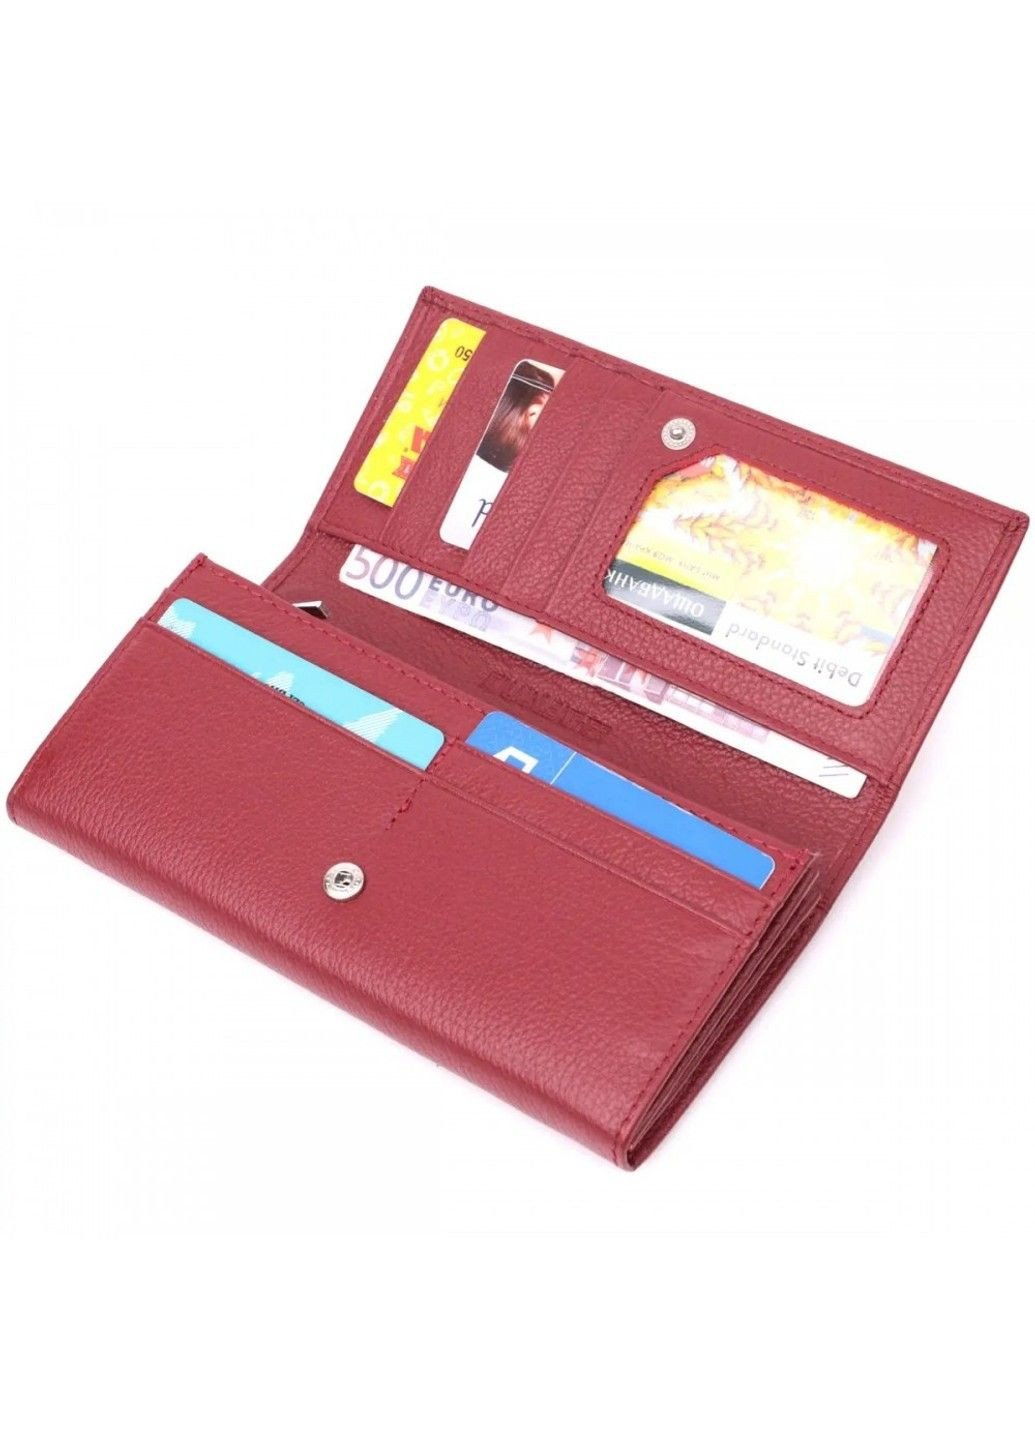 Шкіряний жіночий гаманець ST Leather 22516 ST Leather Accessories (278274827)